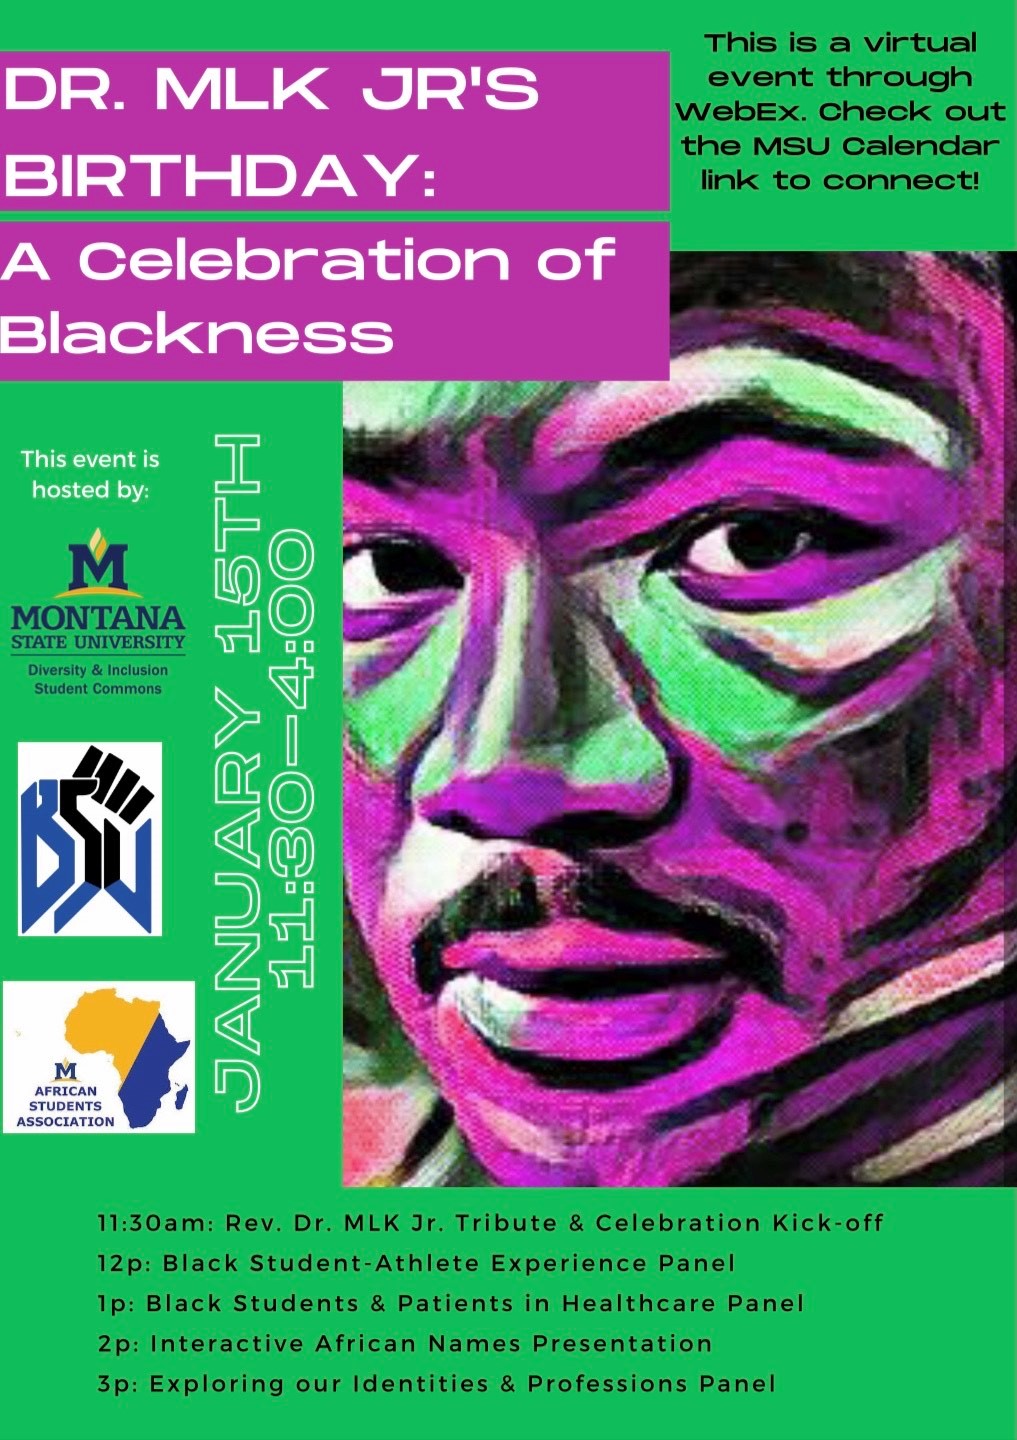 MLK Jr's Birthday Celebration of Blackness, 2021